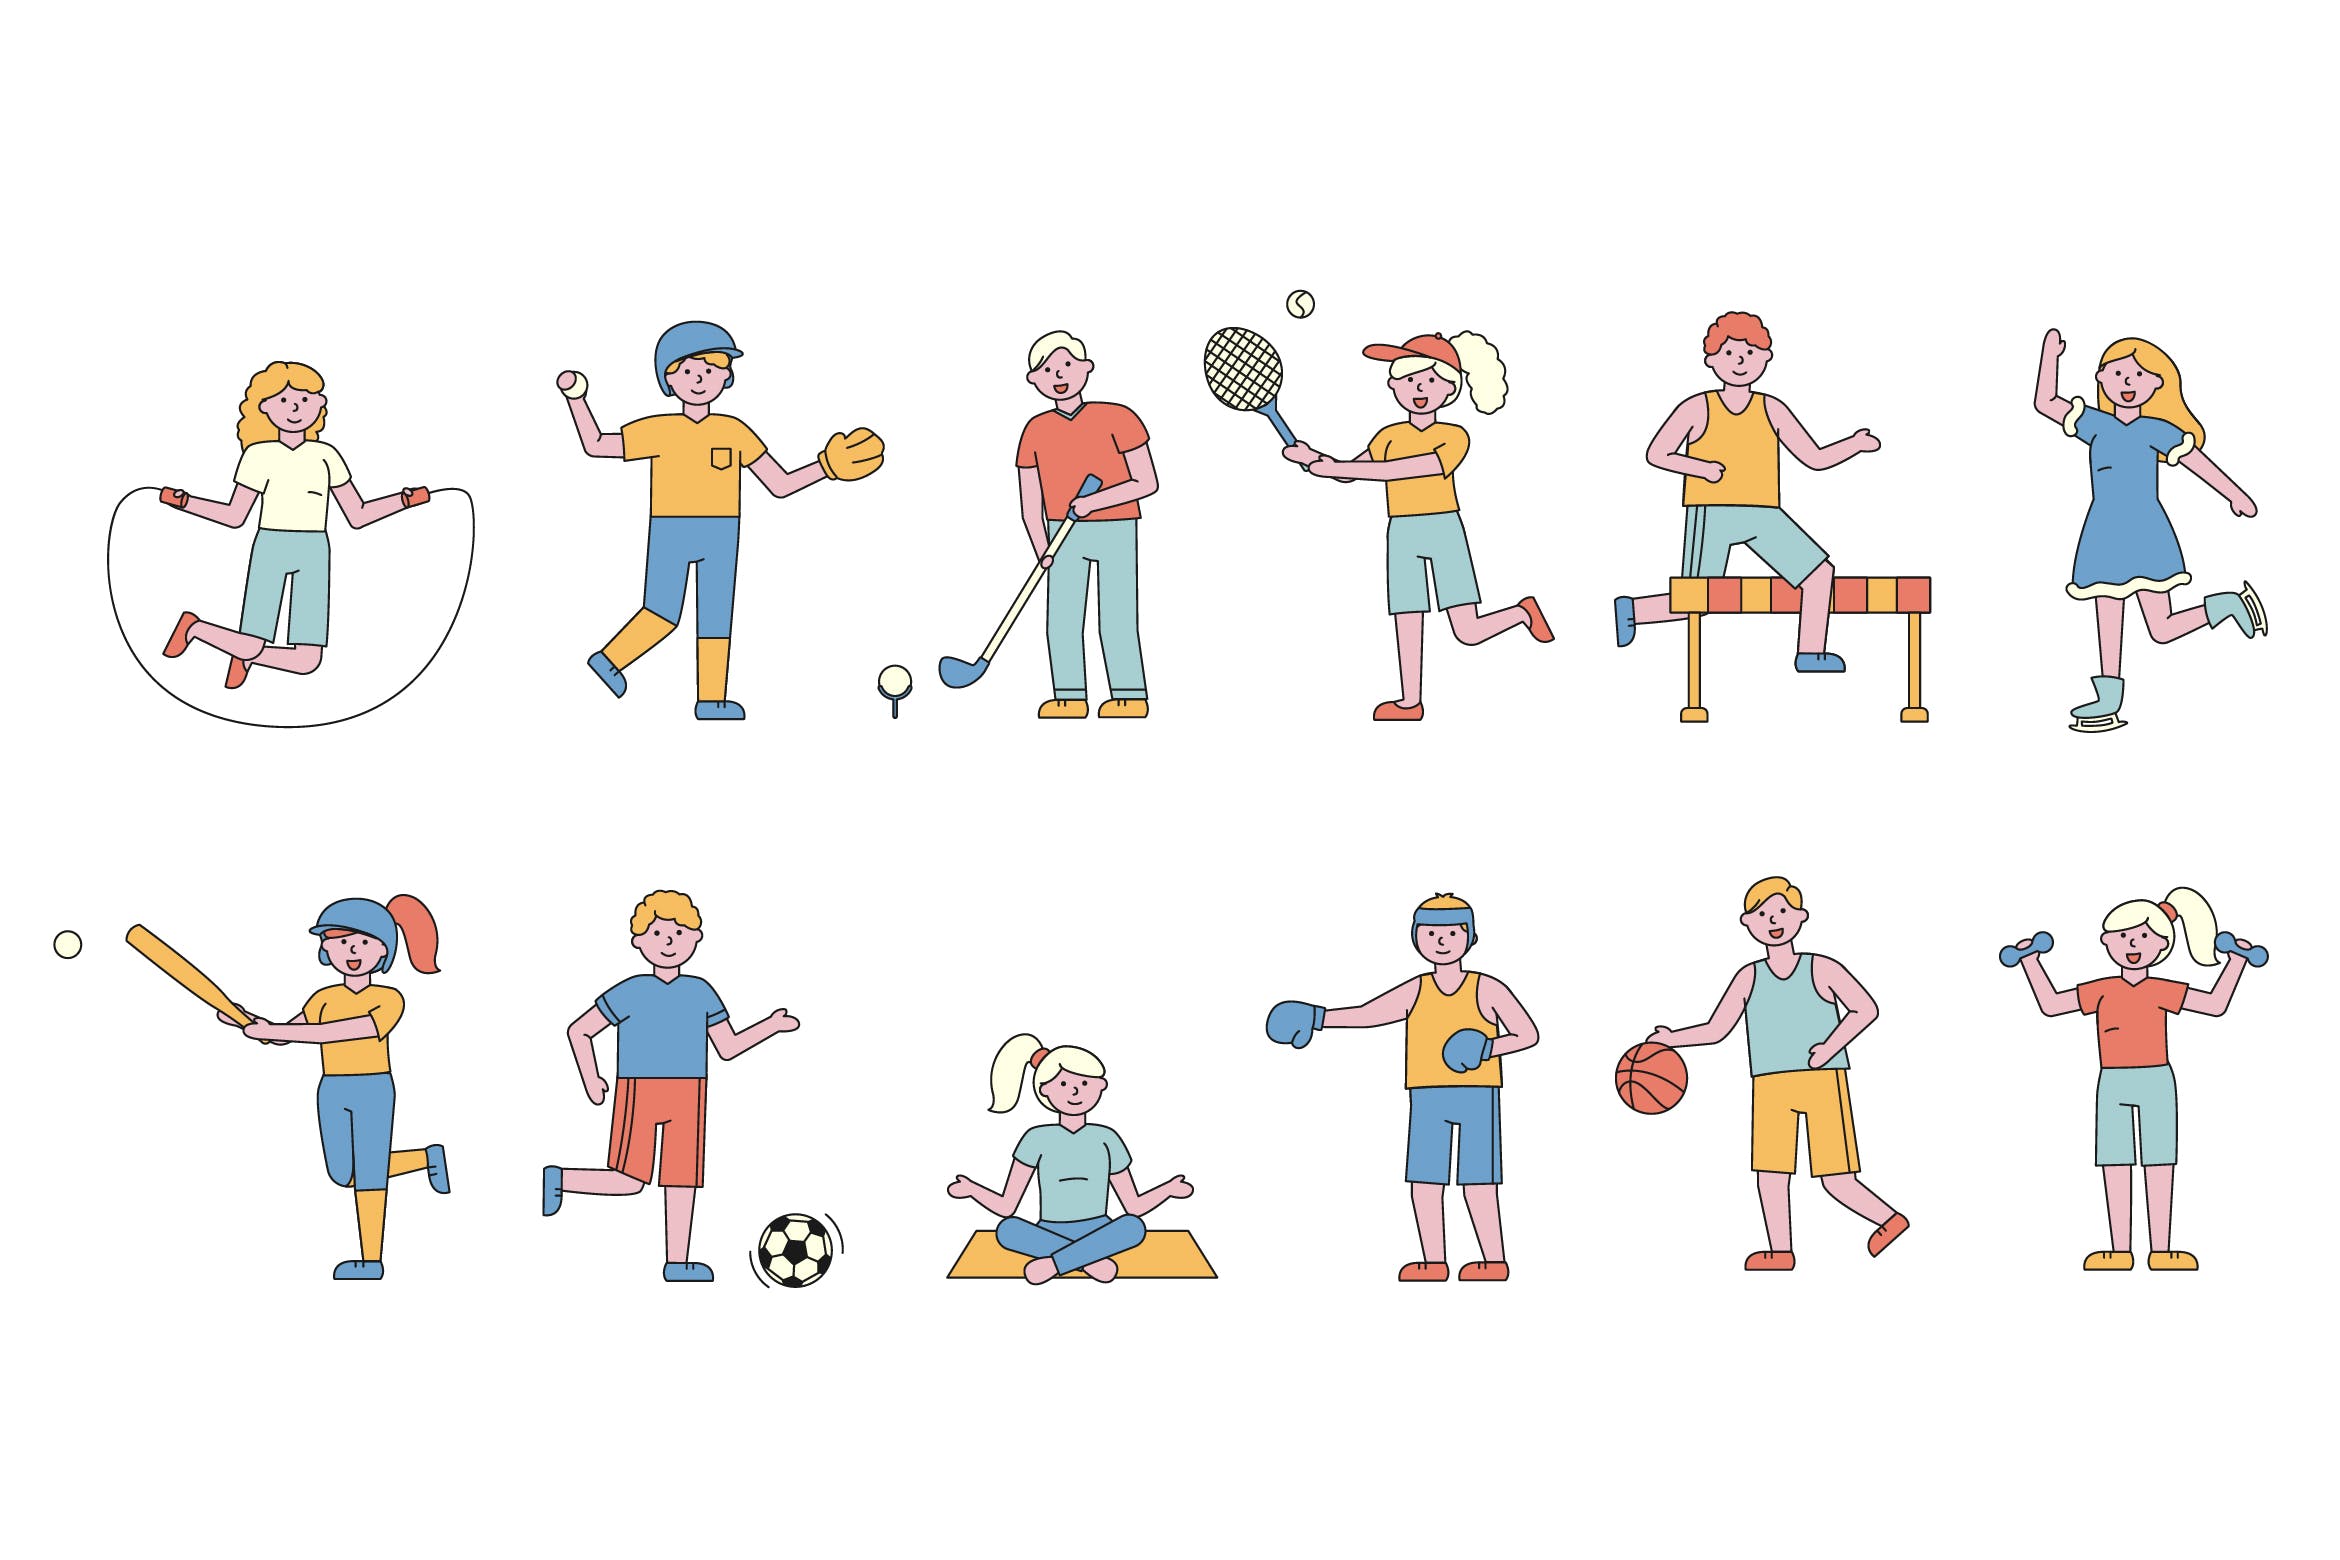 体育运动主题人物形象线条艺术矢量插画蚂蚁素材精选素材 Sportsmen Lineart People Character Collection插图